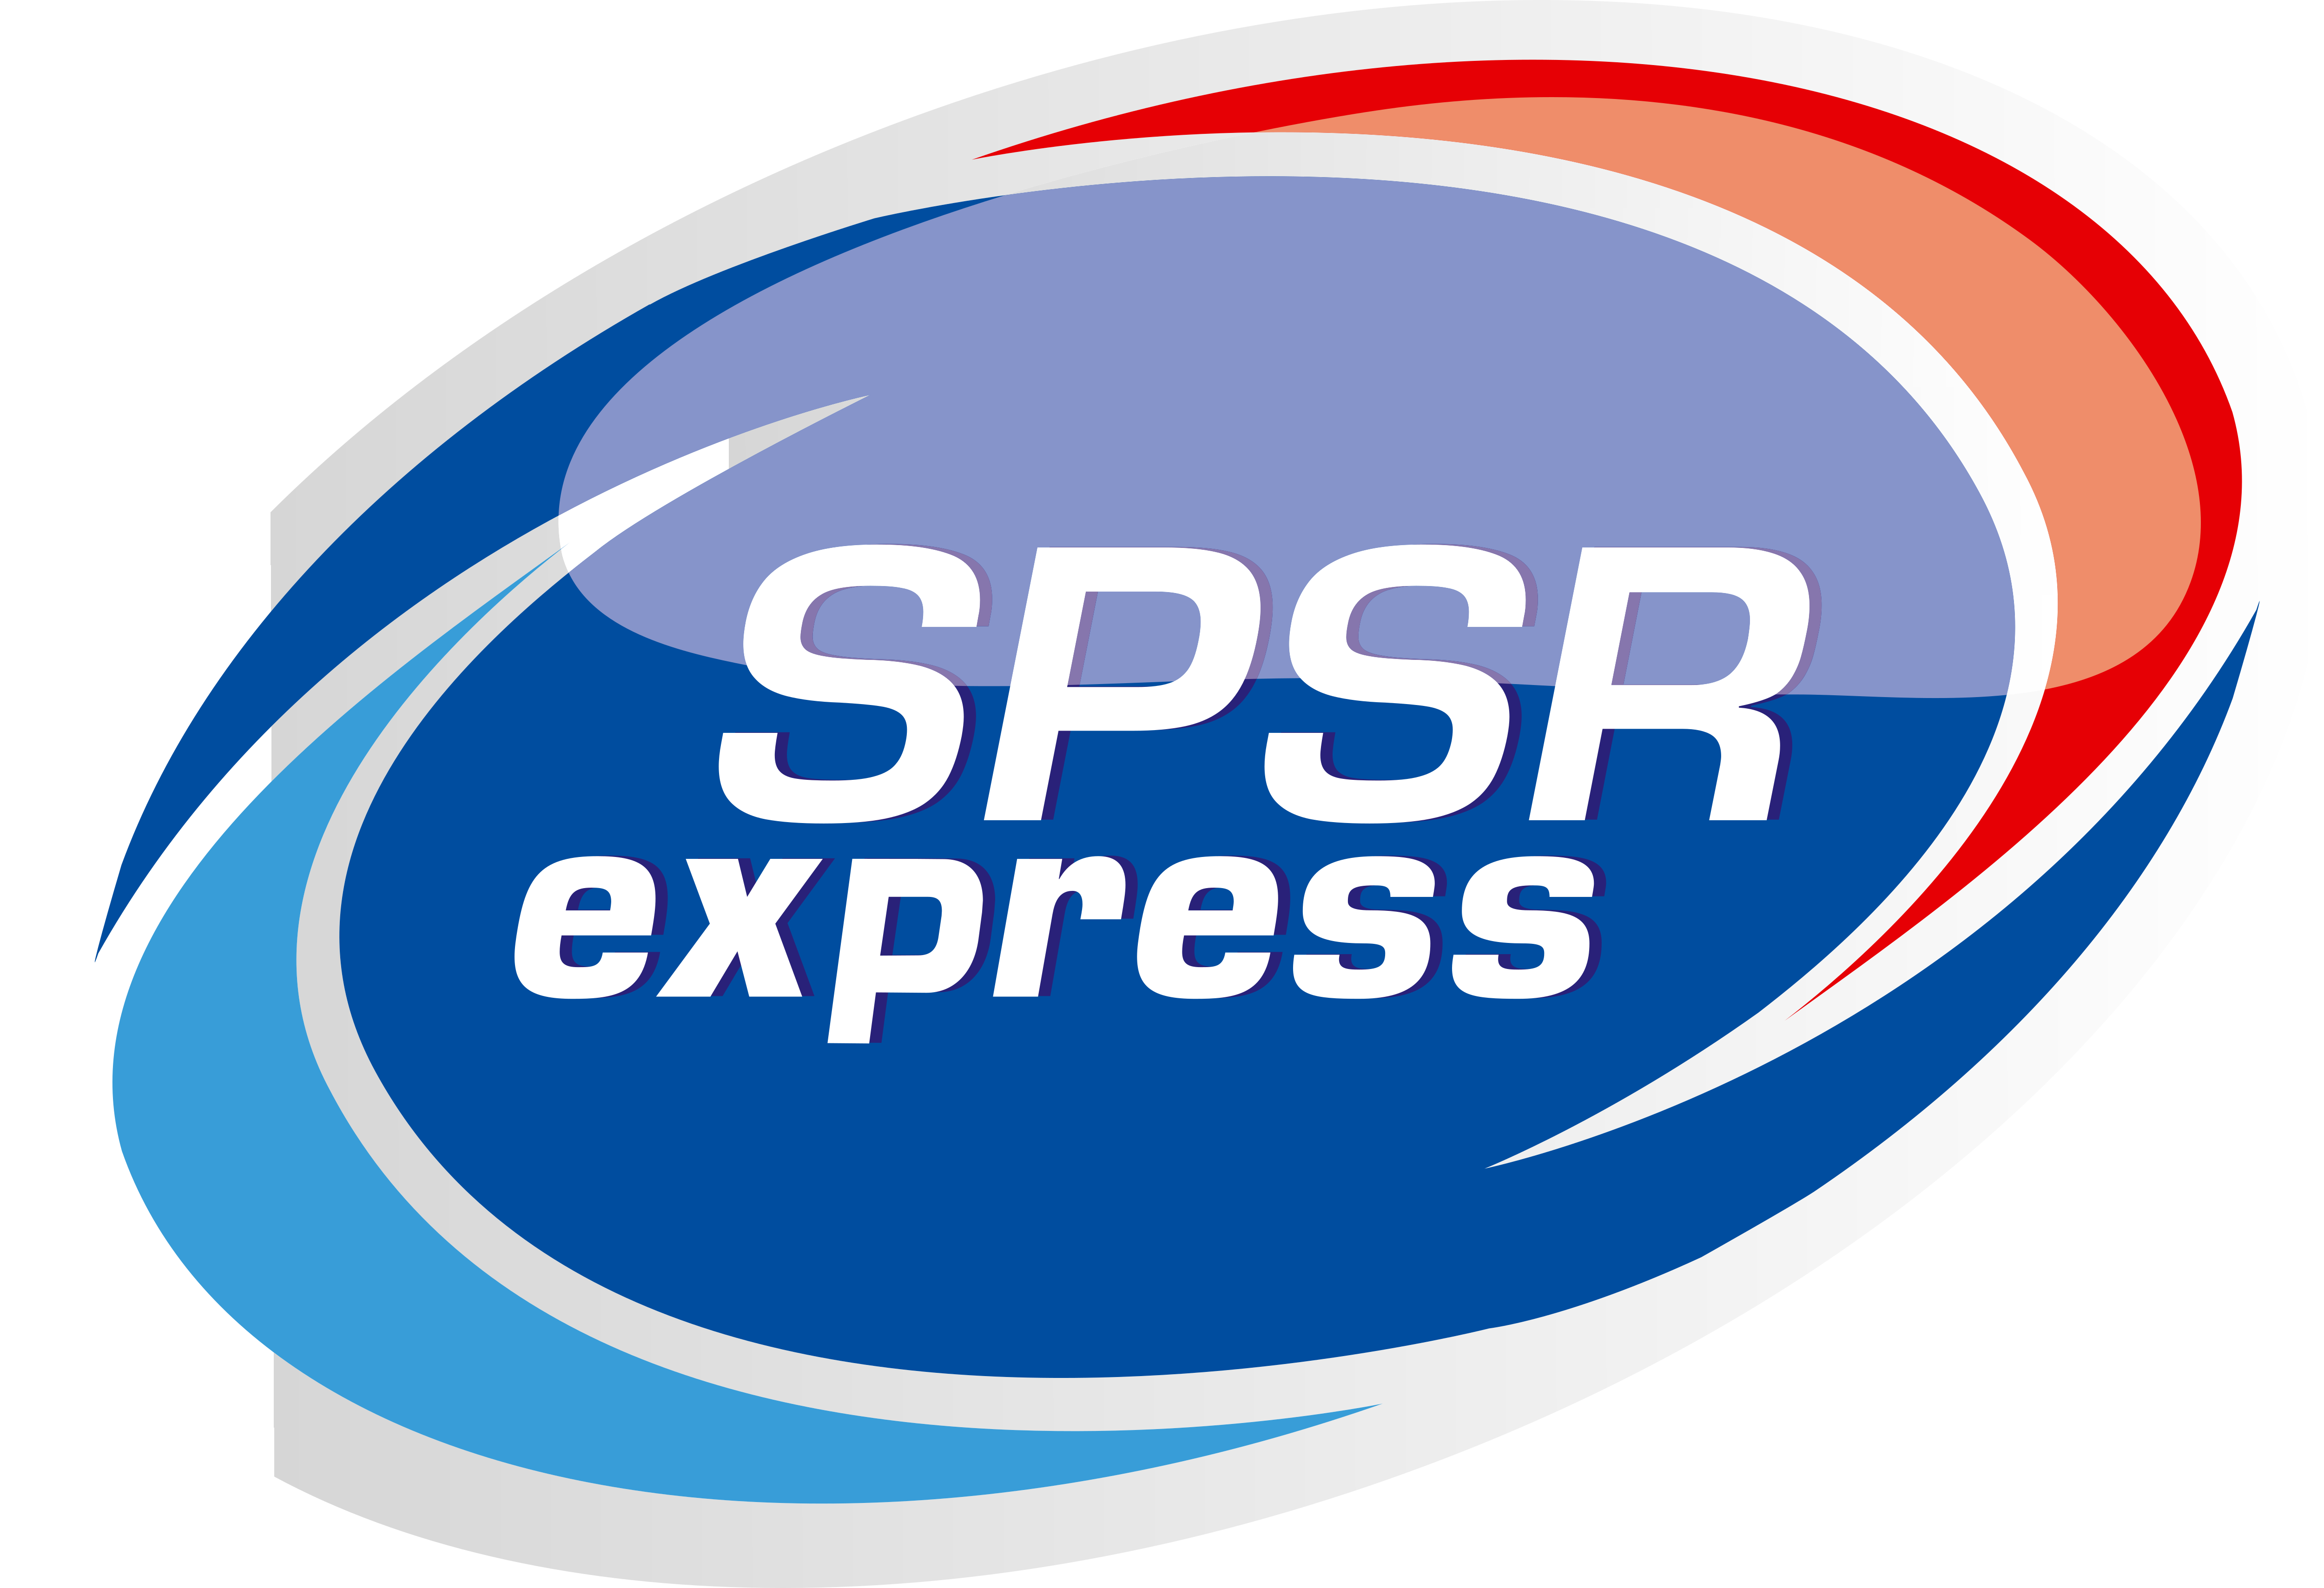 SPSR Express - Logos Download